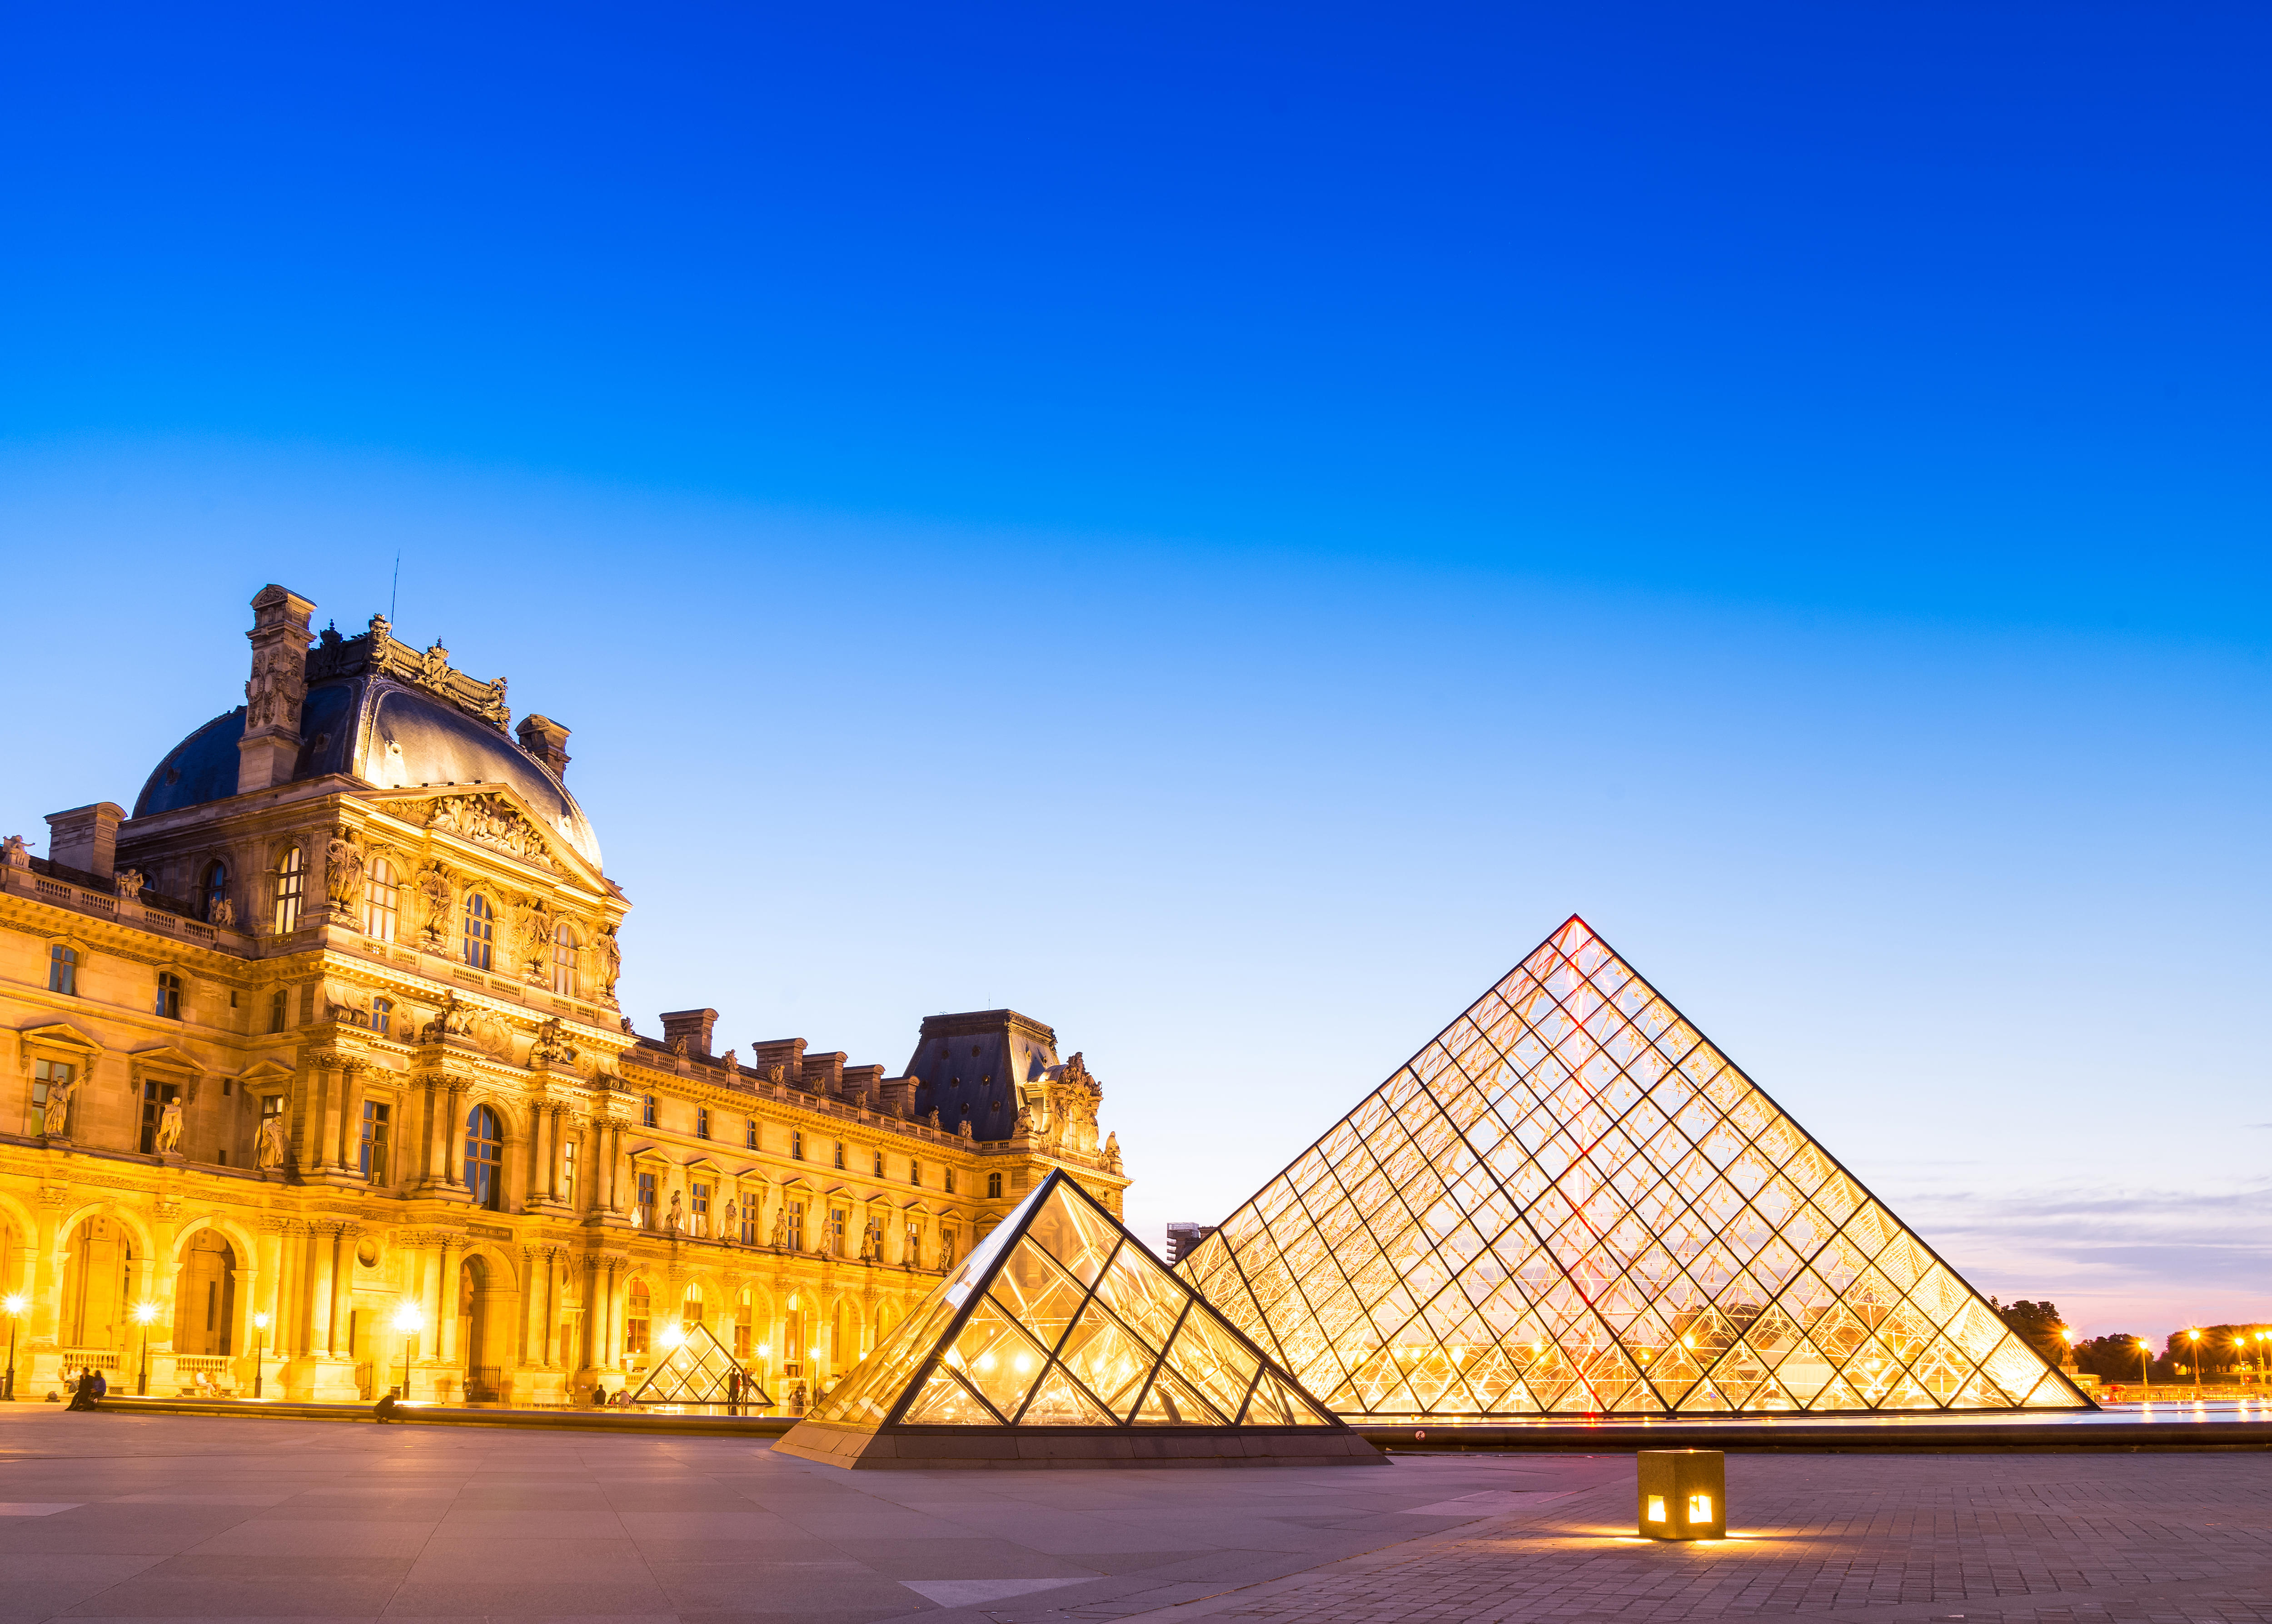 Iconic Louvre Museum in Paris